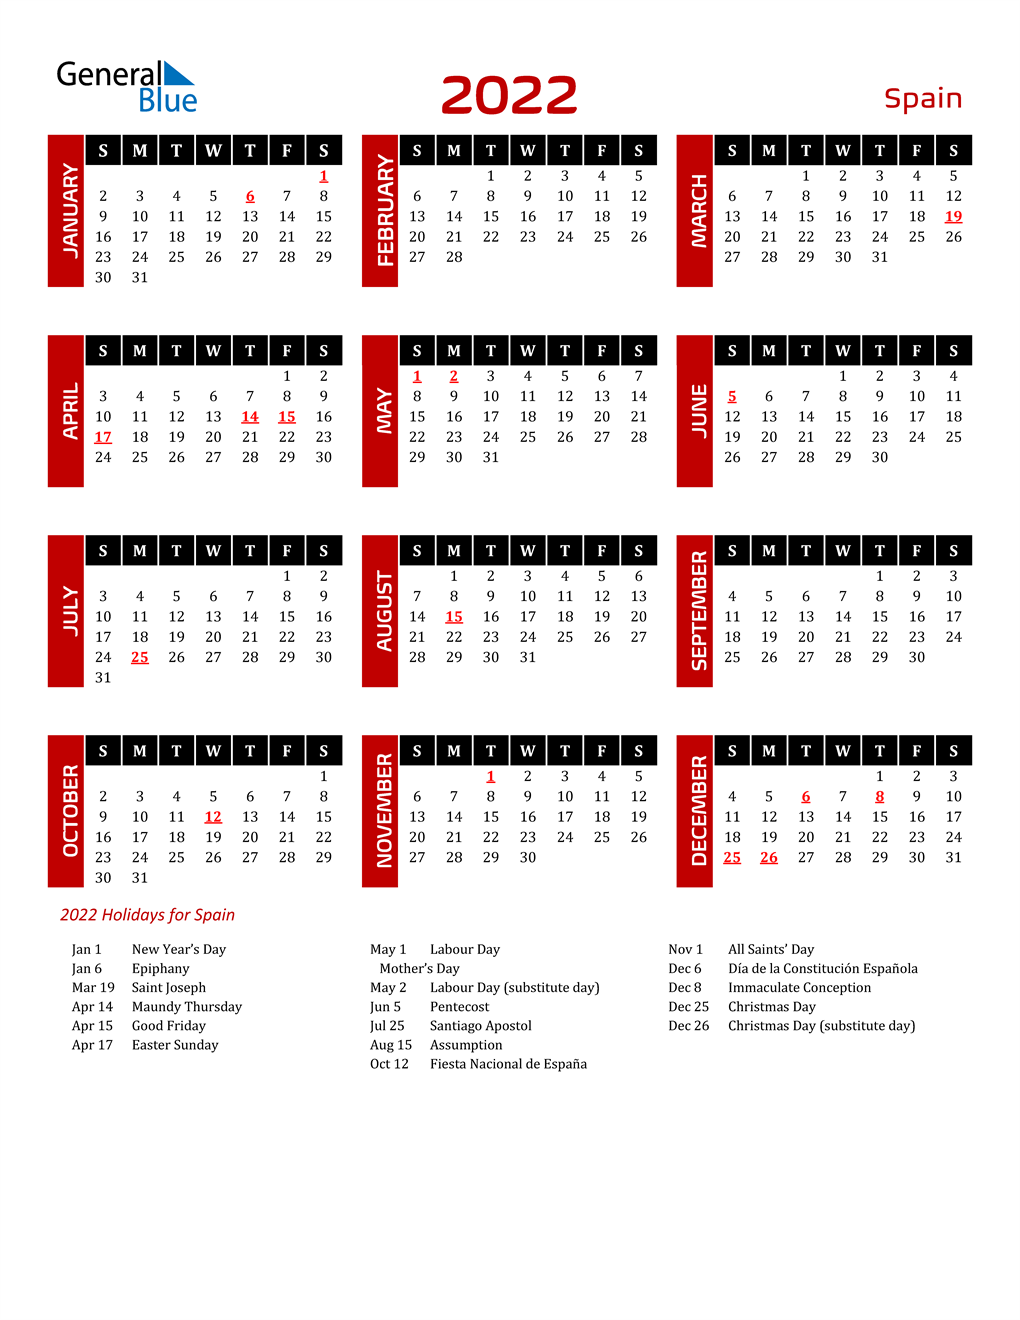 Spanish Calendar 2022 2022 Spain Calendar With Holidays